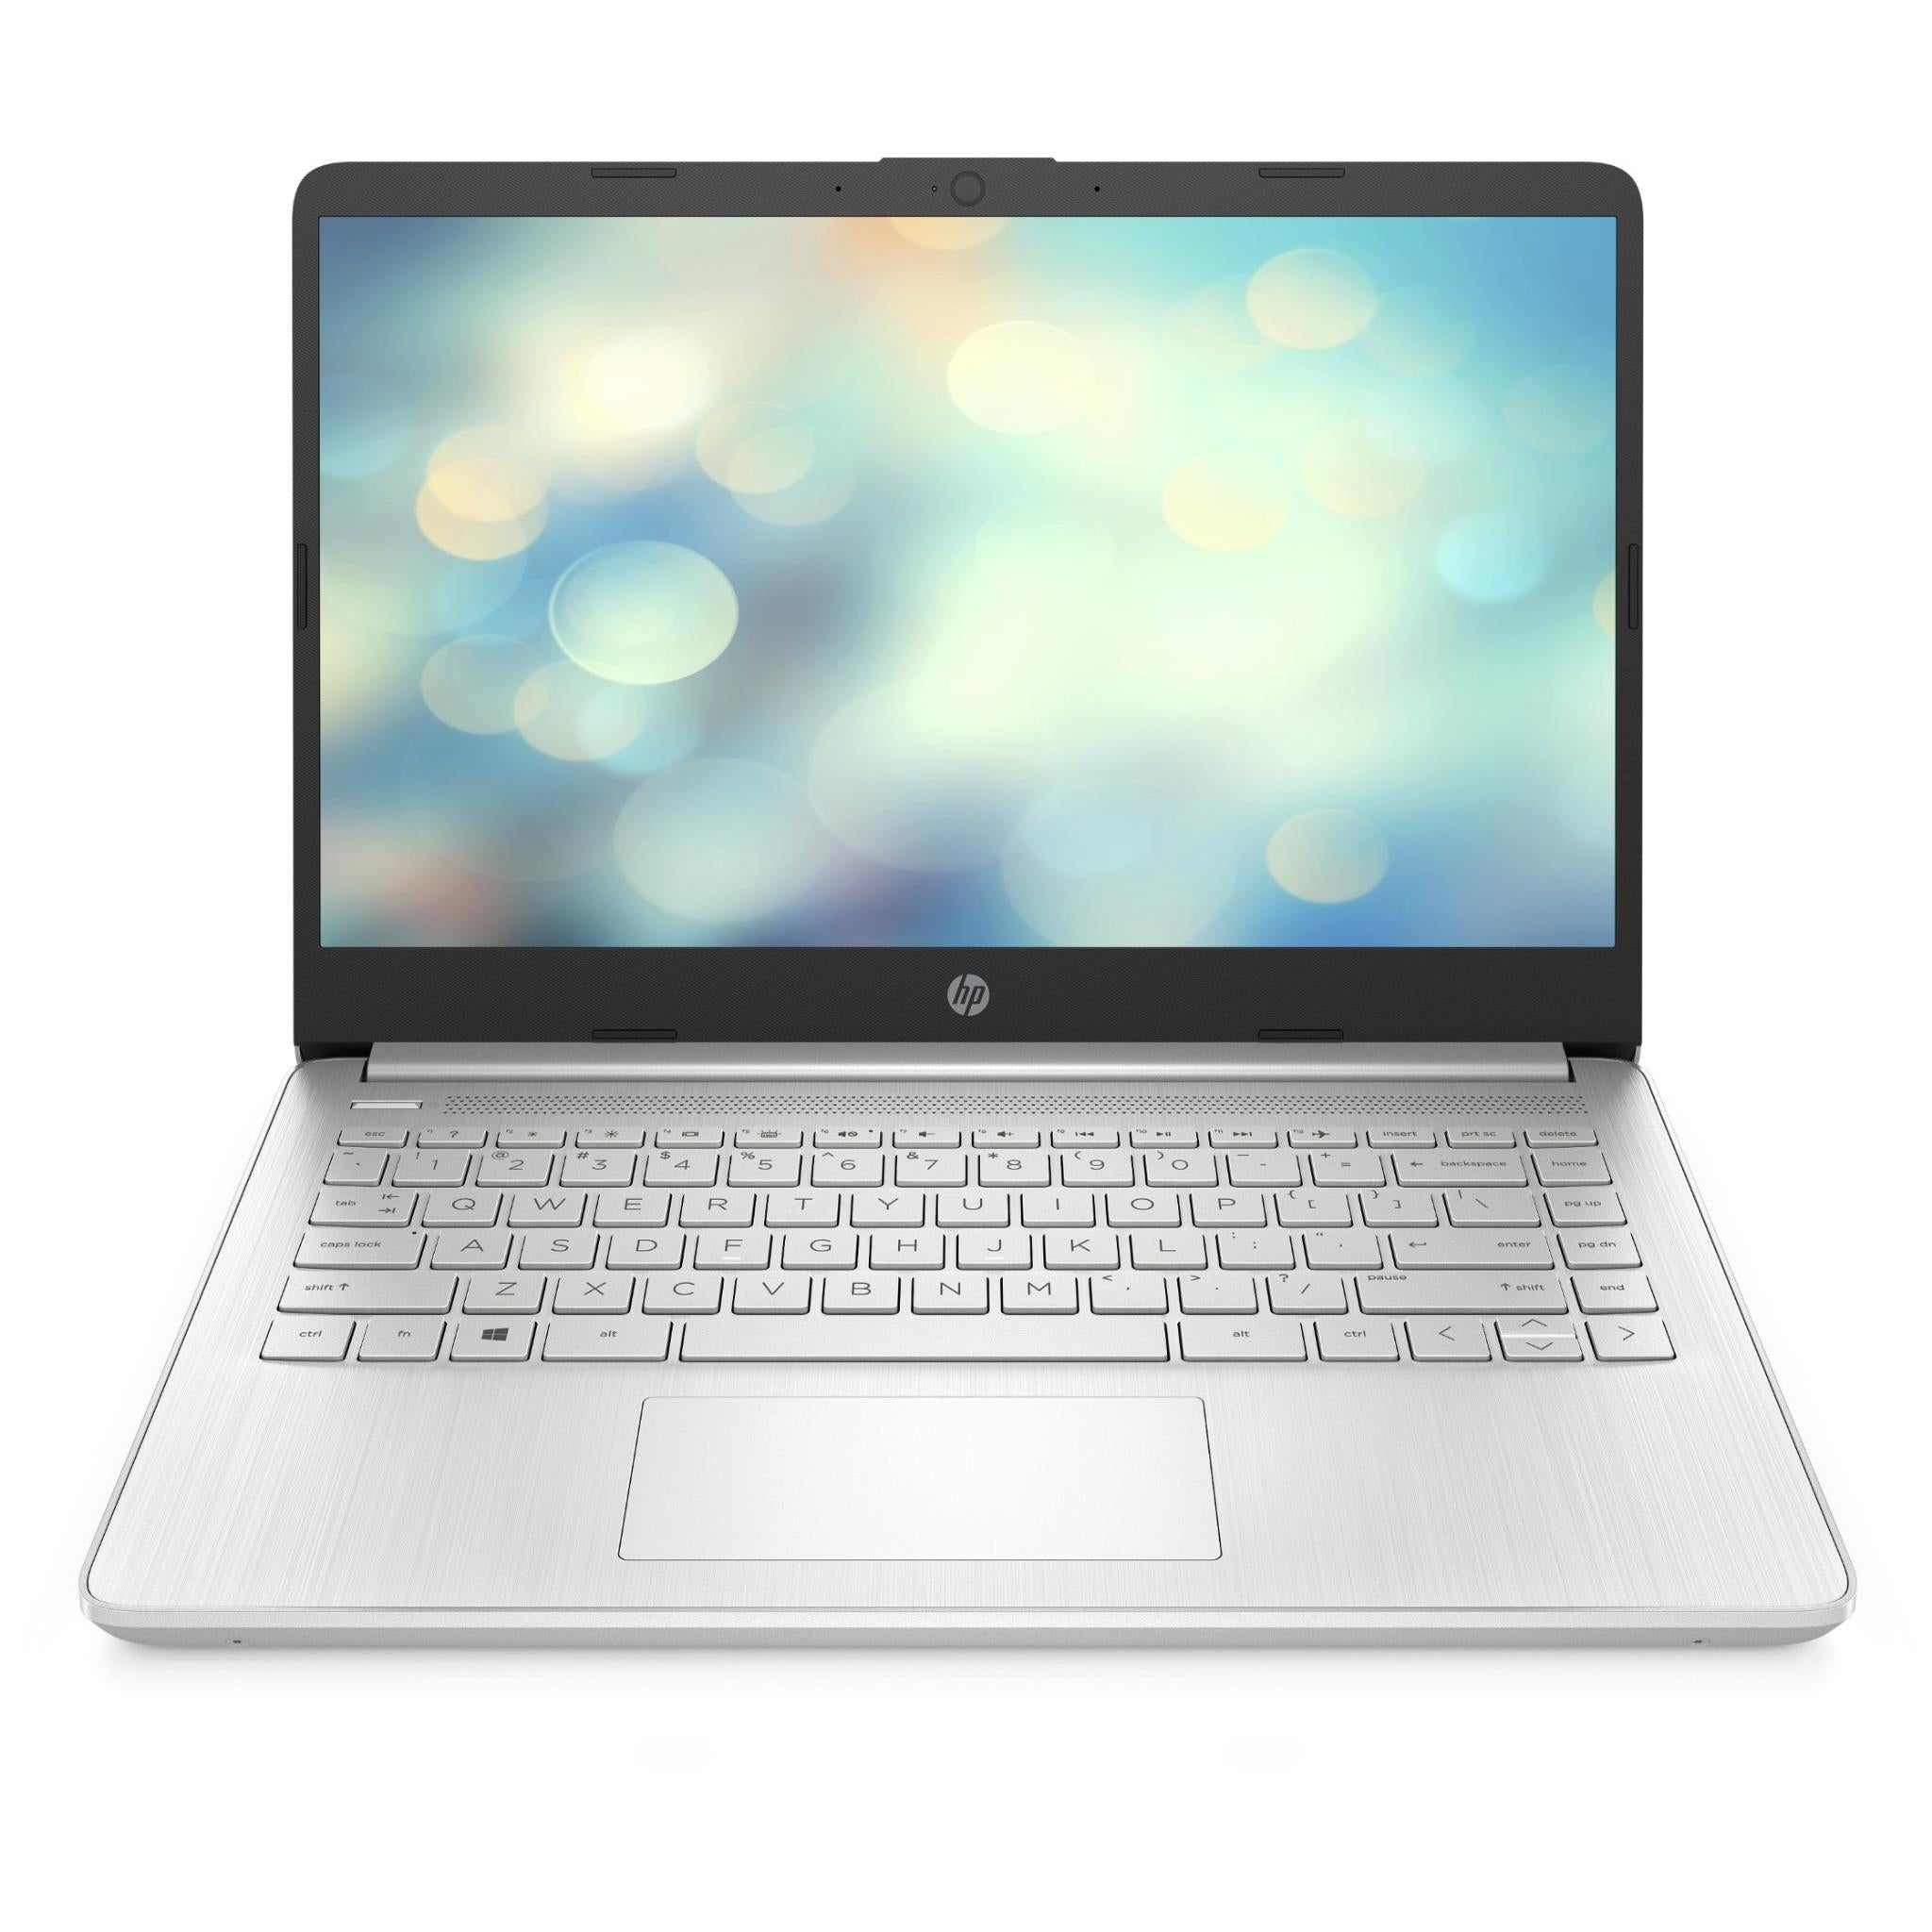 hp 50r74pa 14" hd laptop (128gb) [intel celeron]